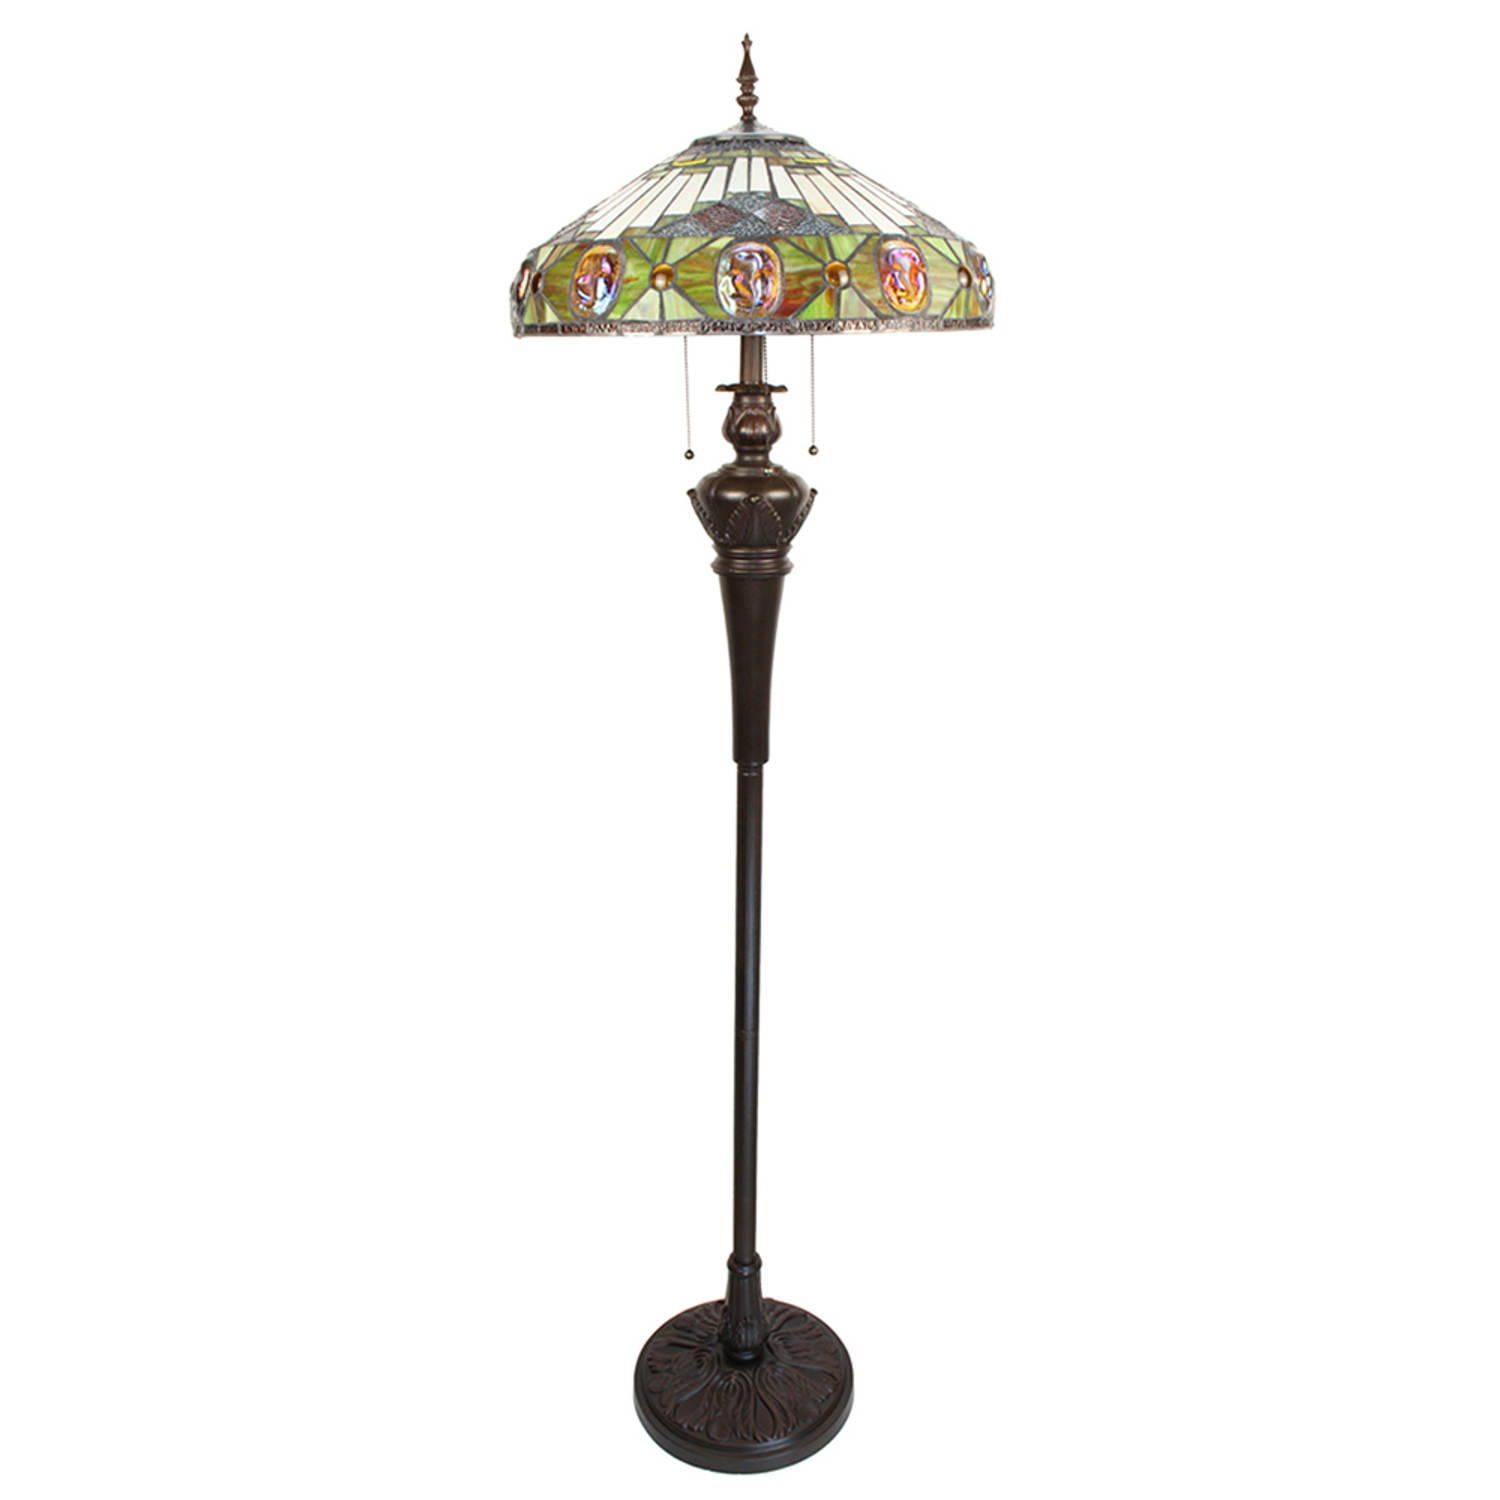 Lumilamp Tiffany Vloerlamp 166 Cm Beige Geel Glas Kunststof Rond Staande Lamp Staanlamp Glas In Lood